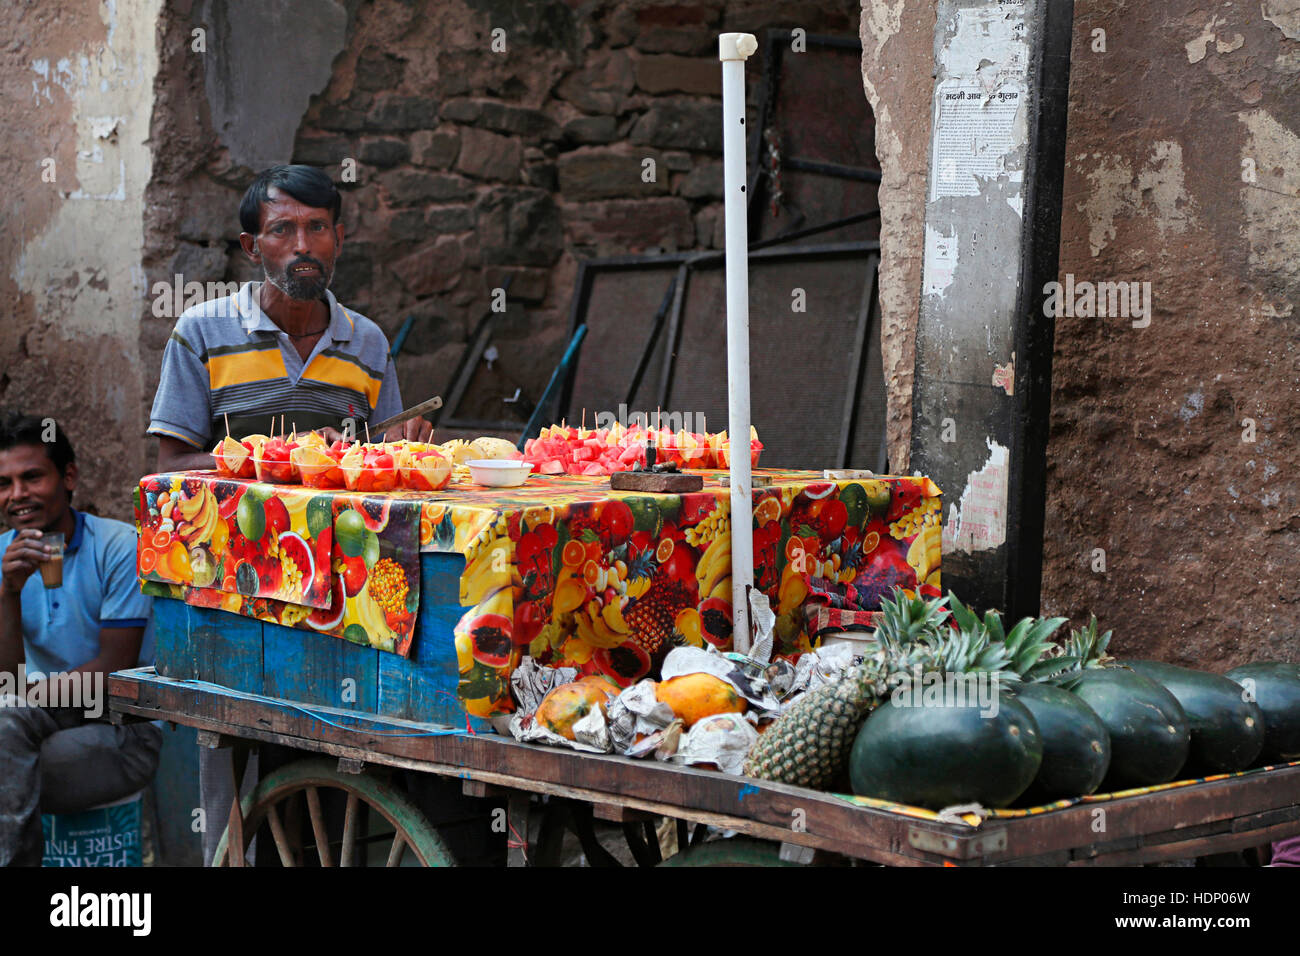 Obst-Verkäufer in Ajmer Markt. Ajmer Straßenmarkt, Rajasthan Indien. Stockfoto